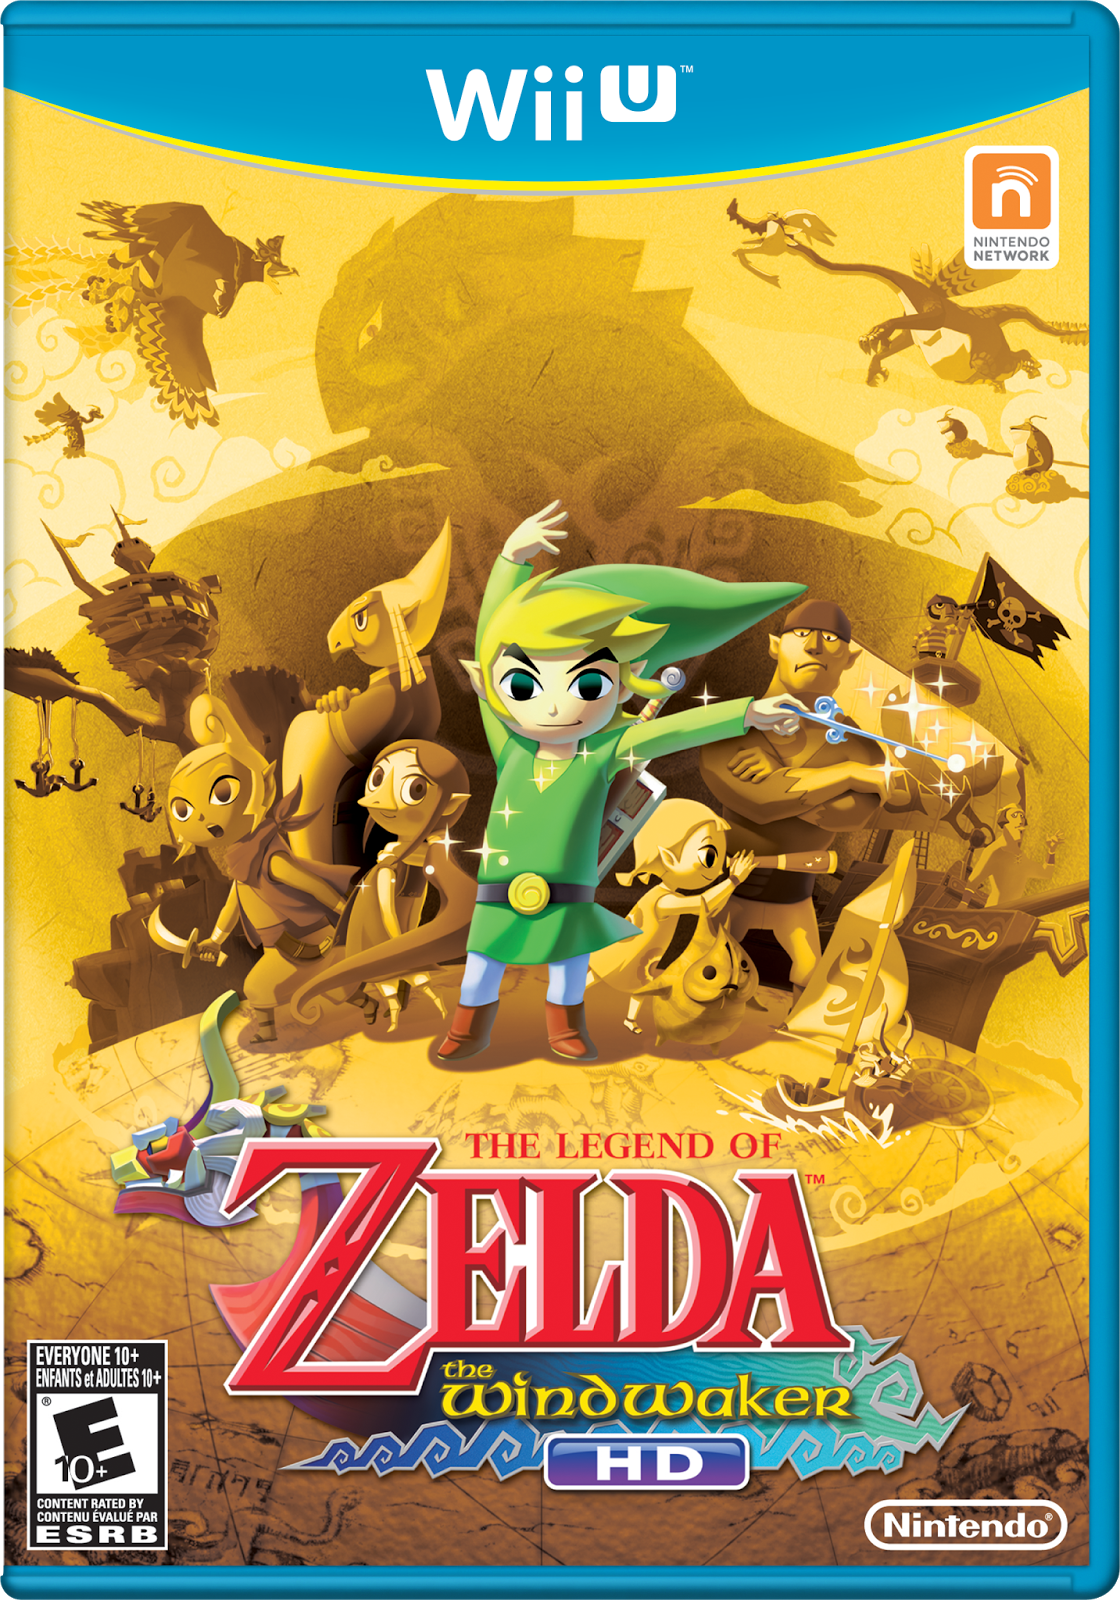 Video game releases: 'NBA 2K14,' 'The Legend of Zelda: Wind Waker